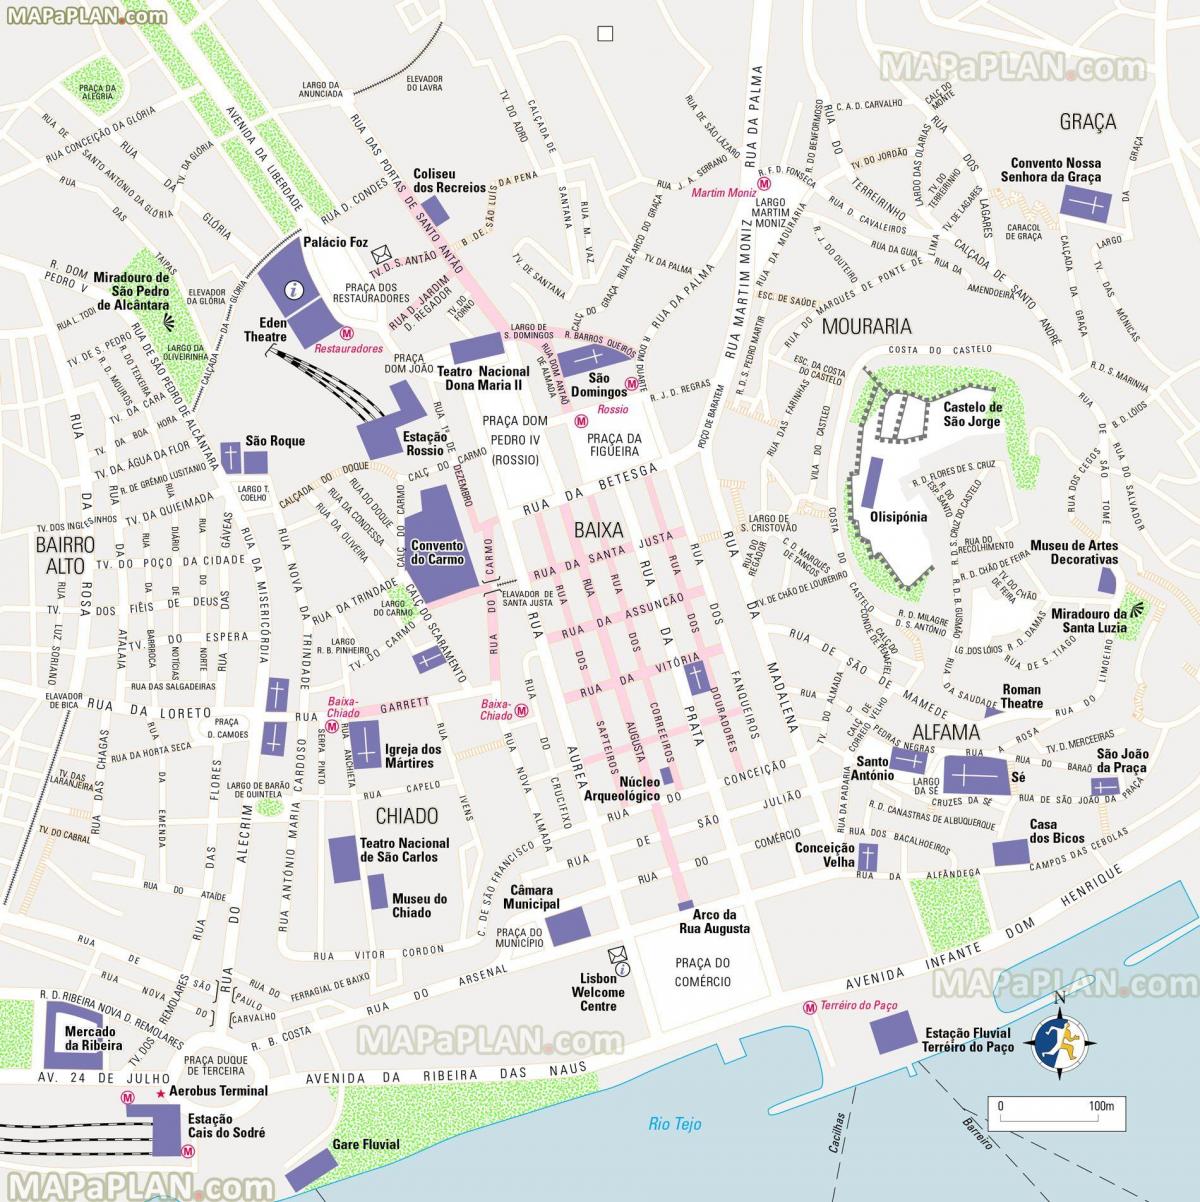 Mappa dei tour a piedi di Lisbona